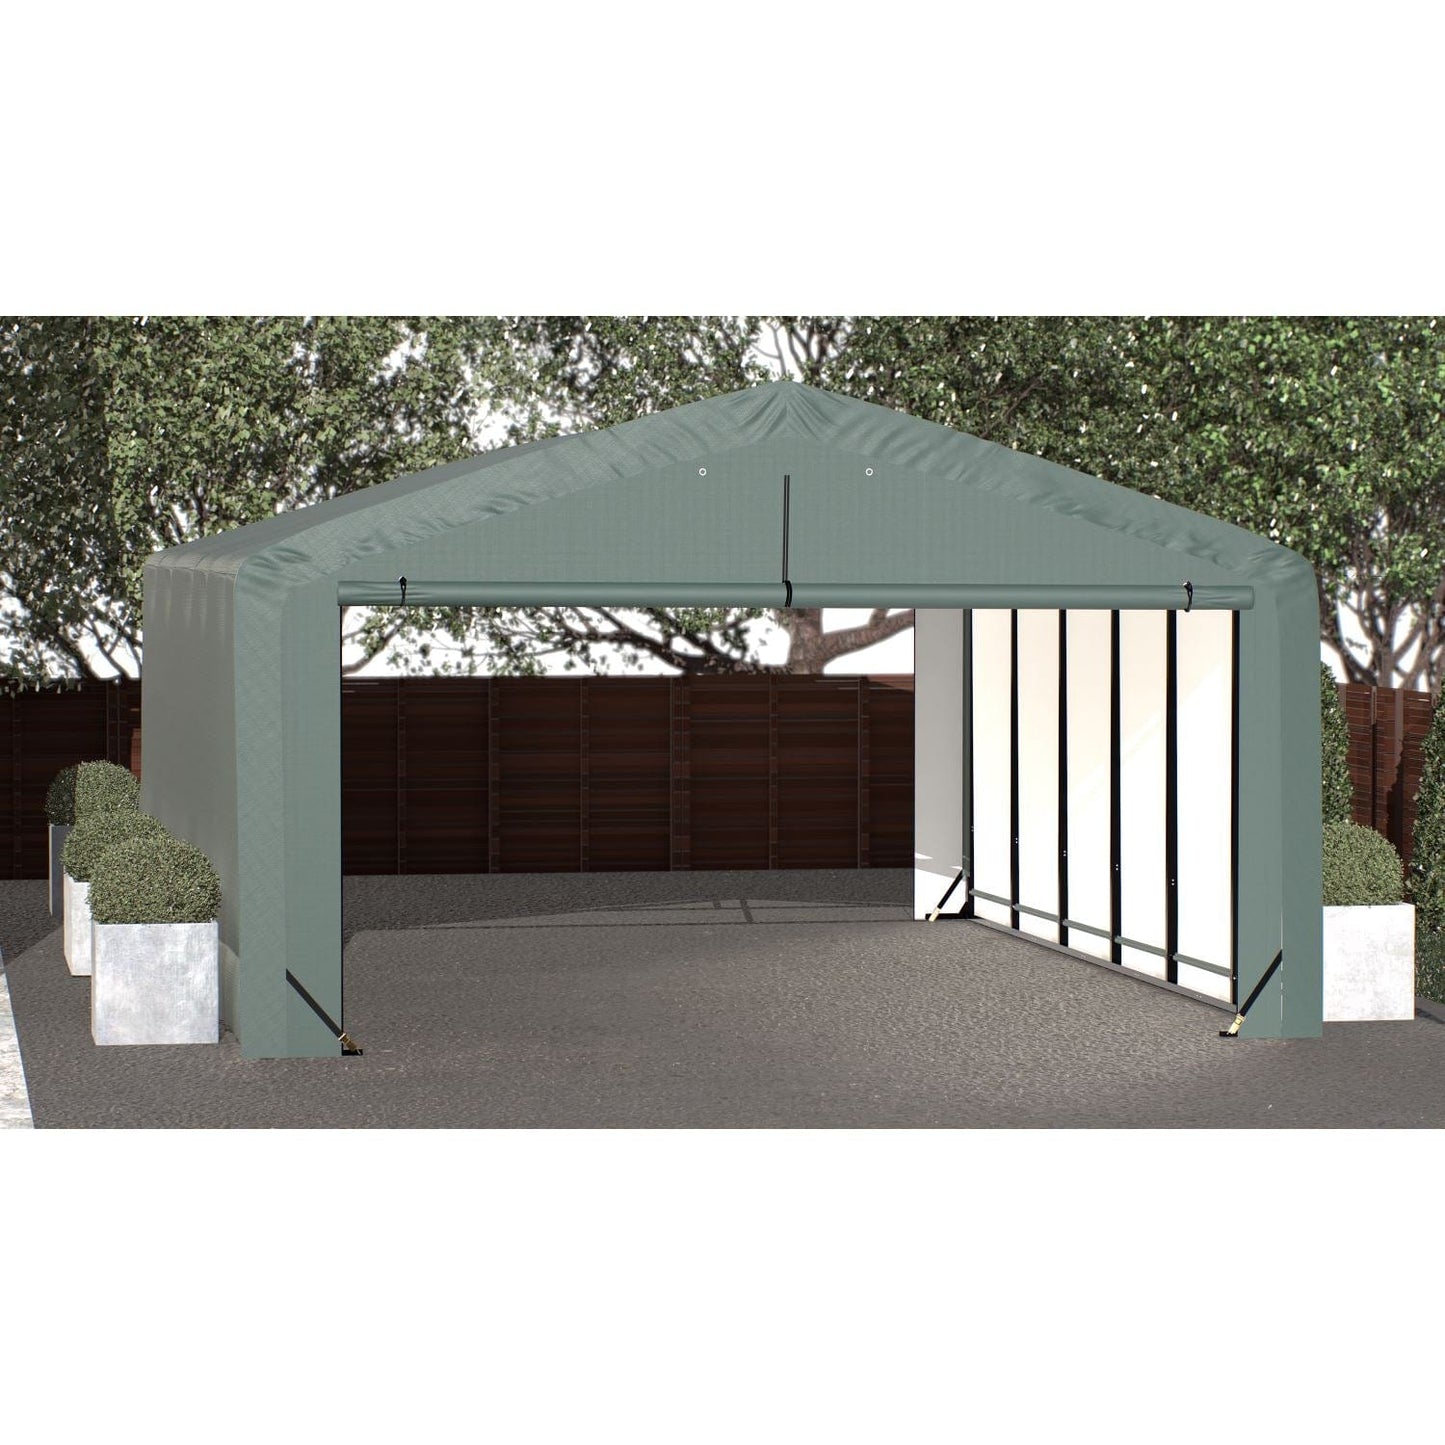 ShelterLogic Portable Garage ShelterLogic | ShelterTube Wind and Snow-Load Rated Garage 20x32x10 Green SQAADD0104C02003210